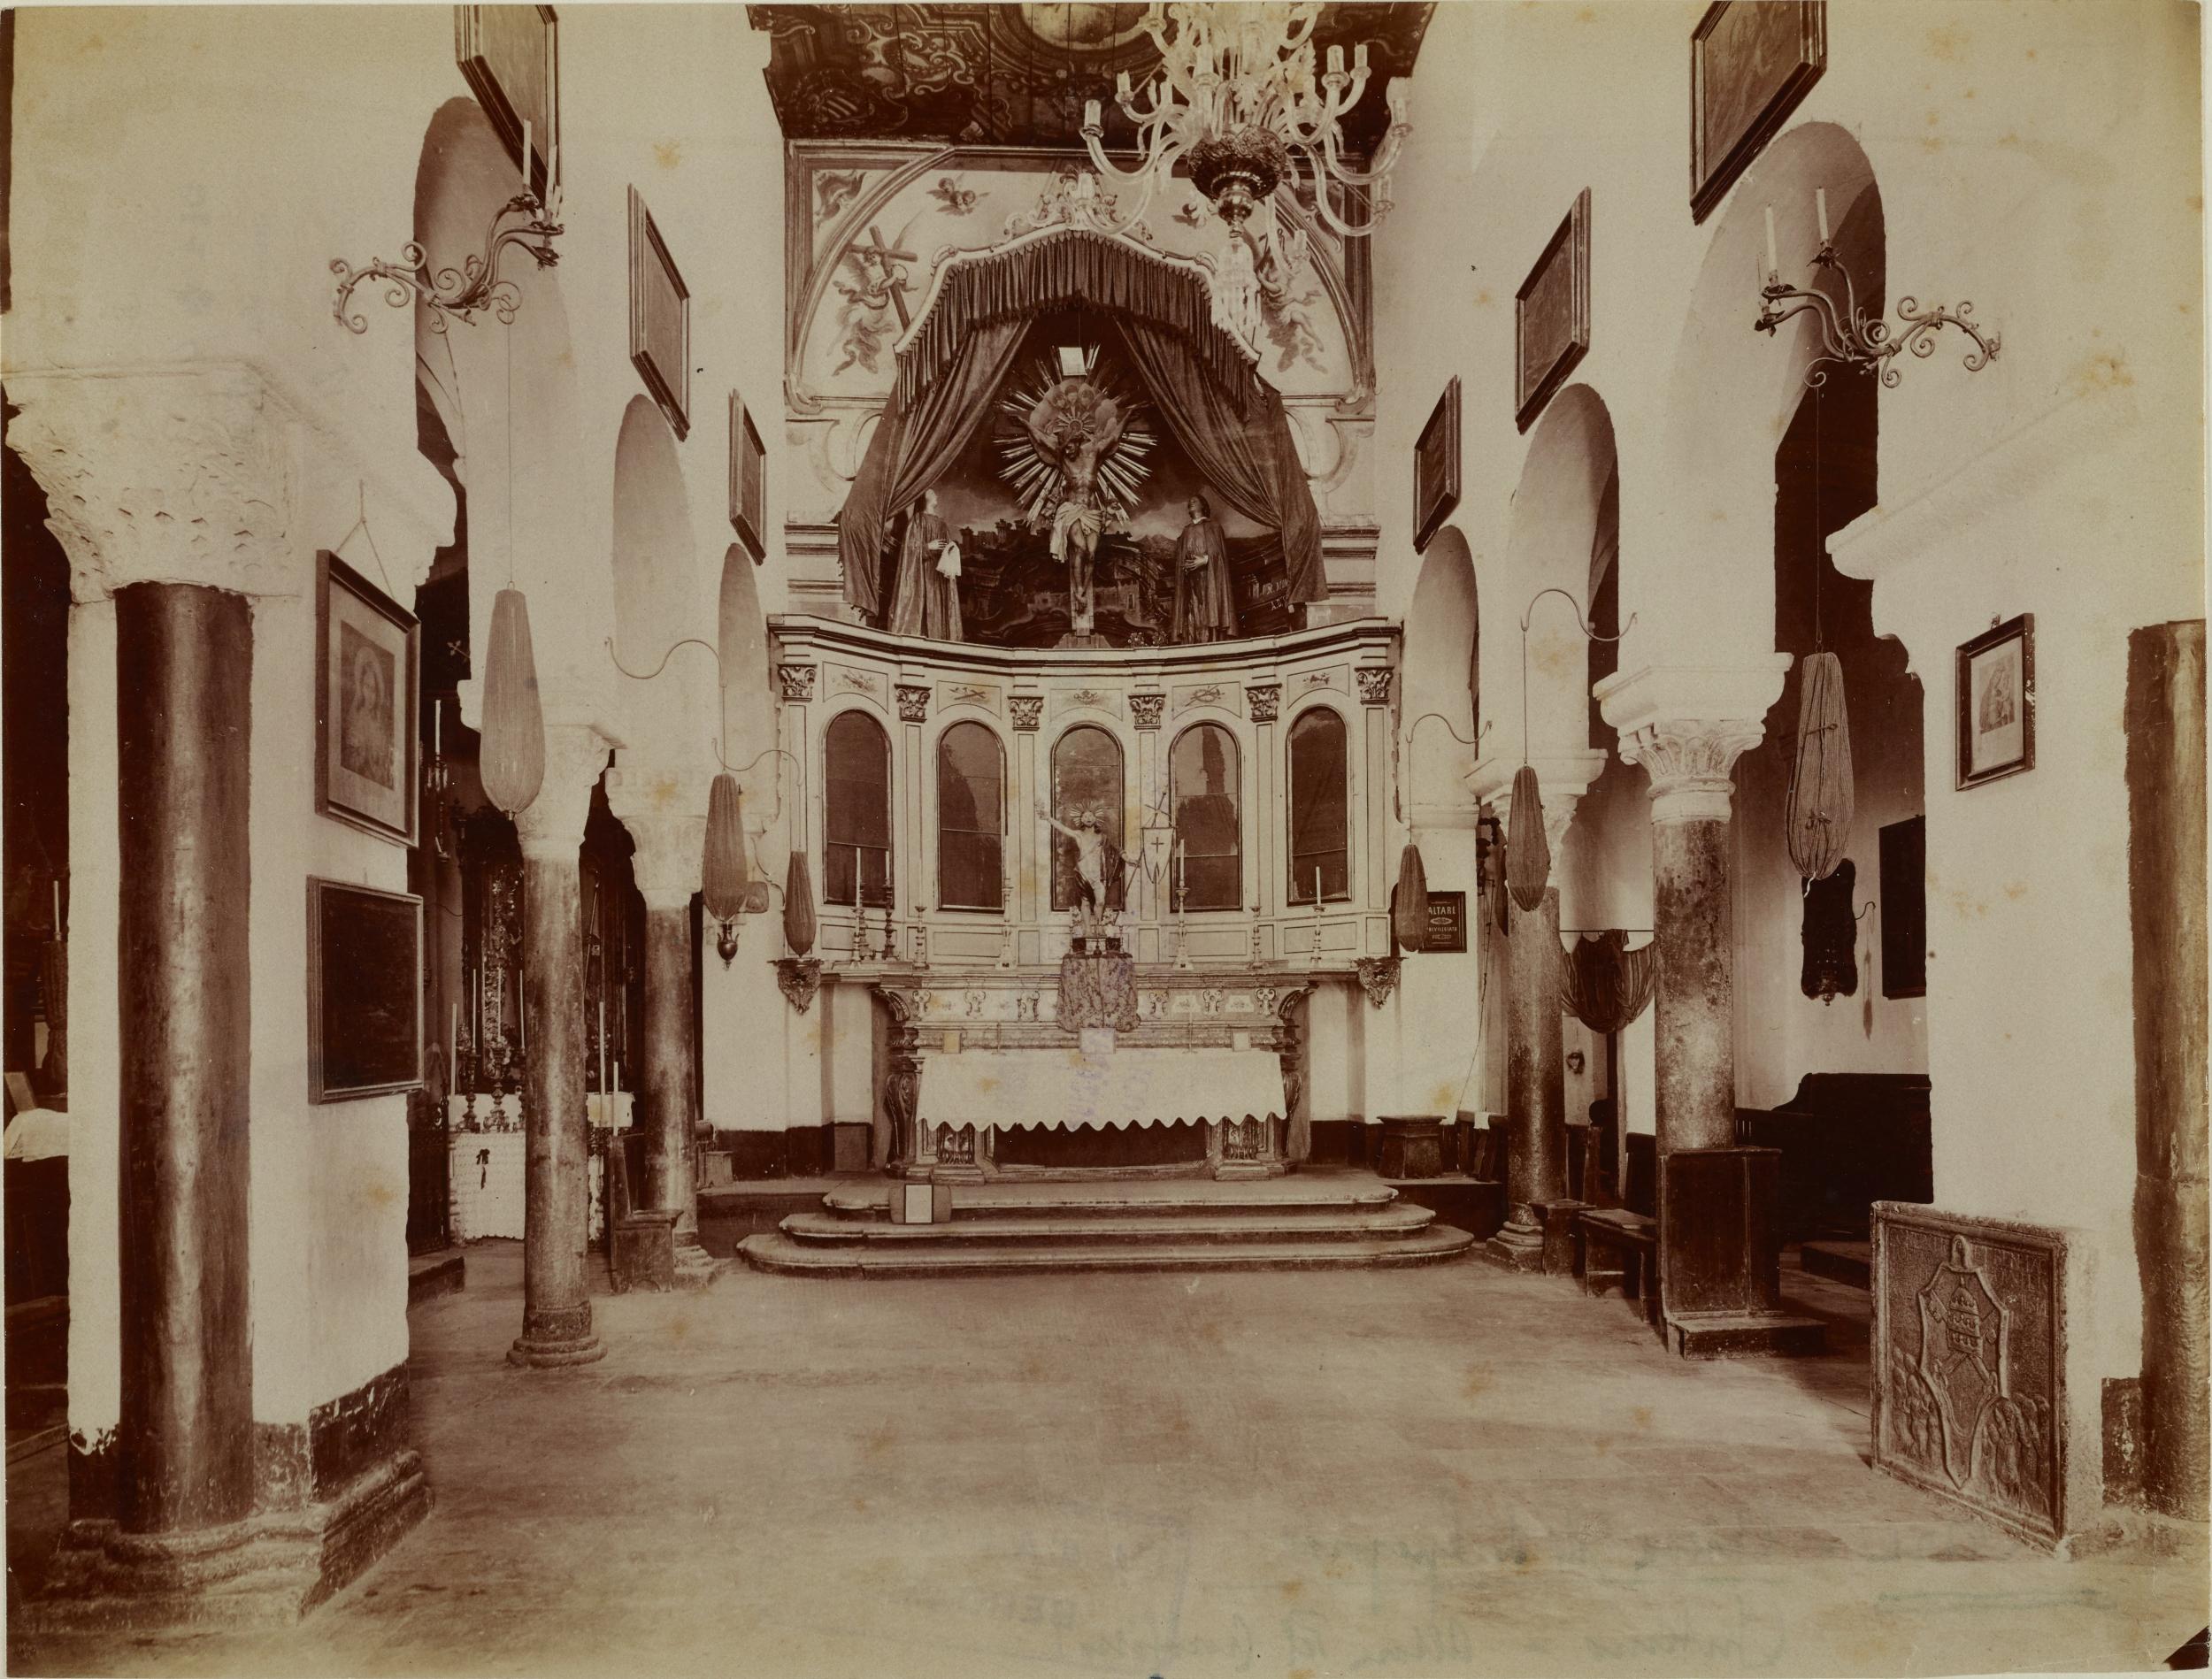 Fotografo non identificato, Bari - Chiesa di S. Gregorio, navata centrale, veduta generale prima dei restauri, 1901-1910, albumina/carta, MPI136717